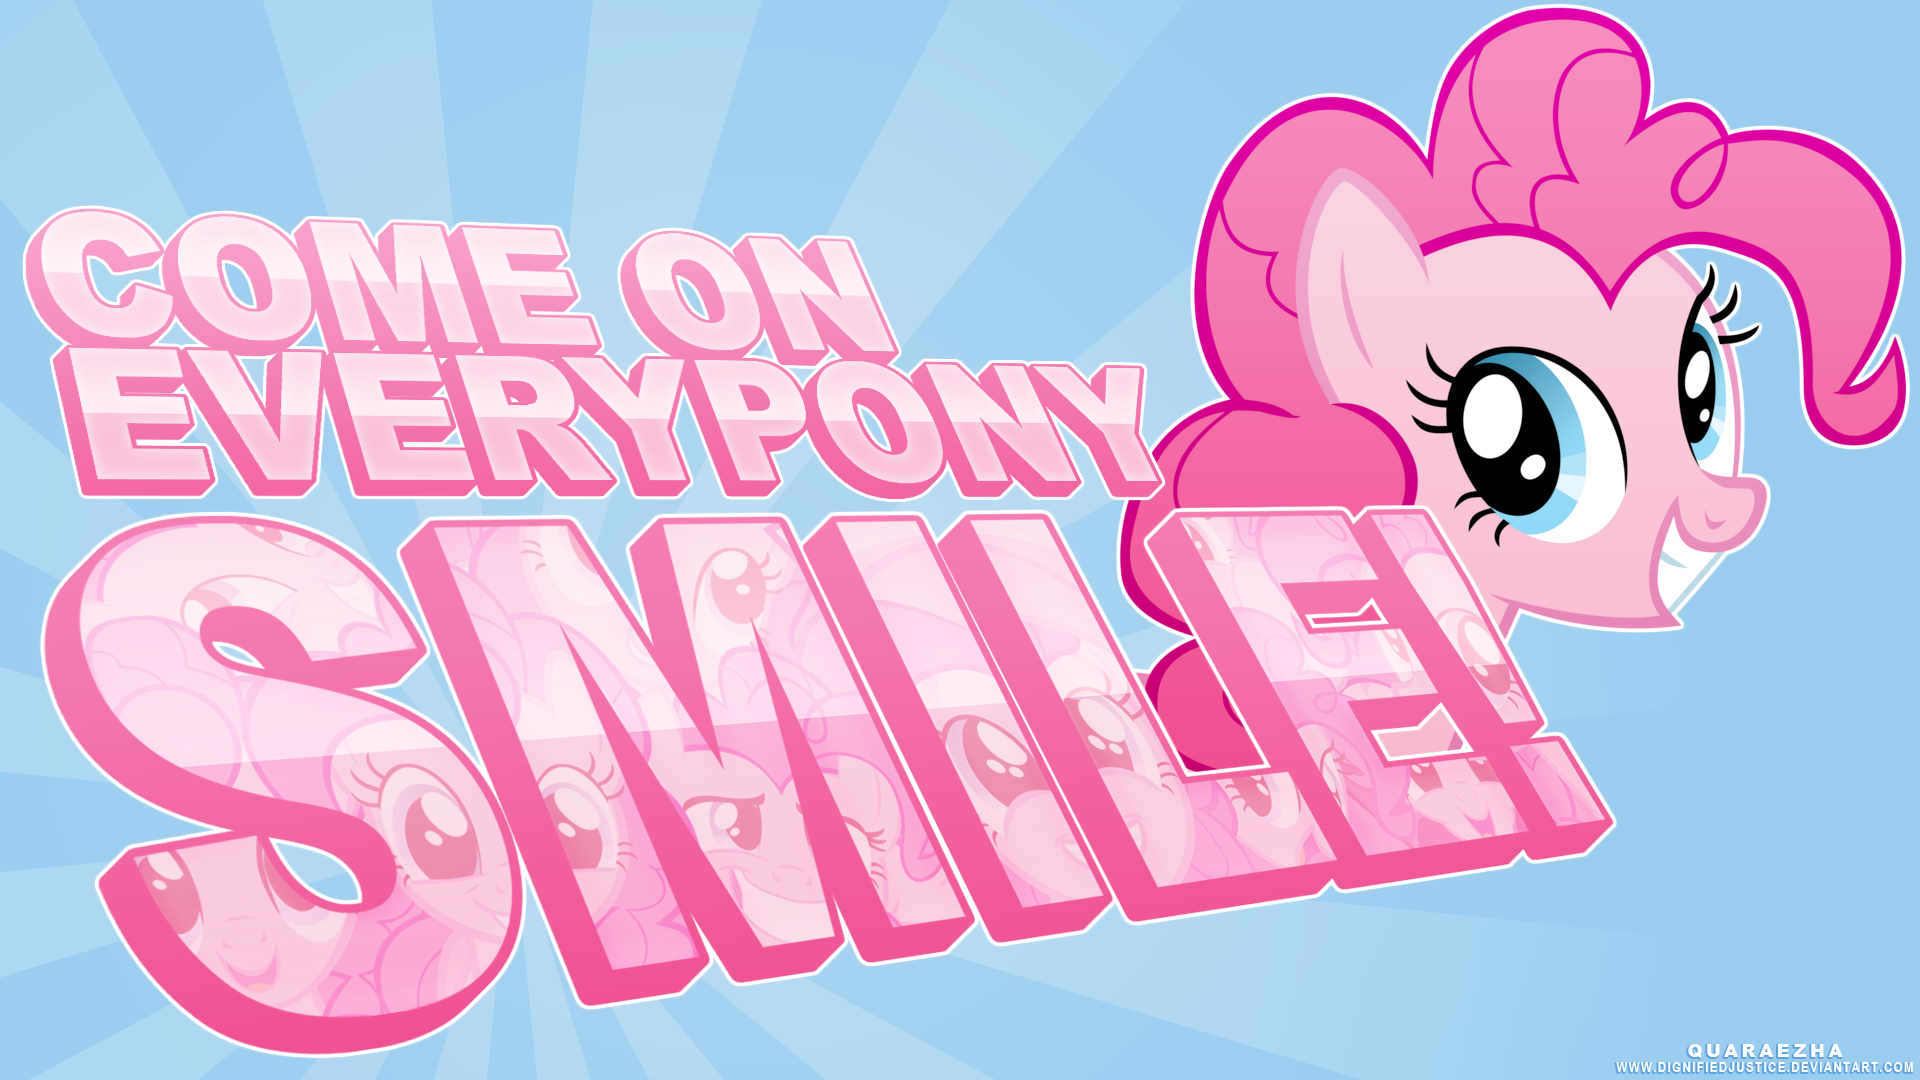 Come on Everypony Smile! by Paradigm-Zero